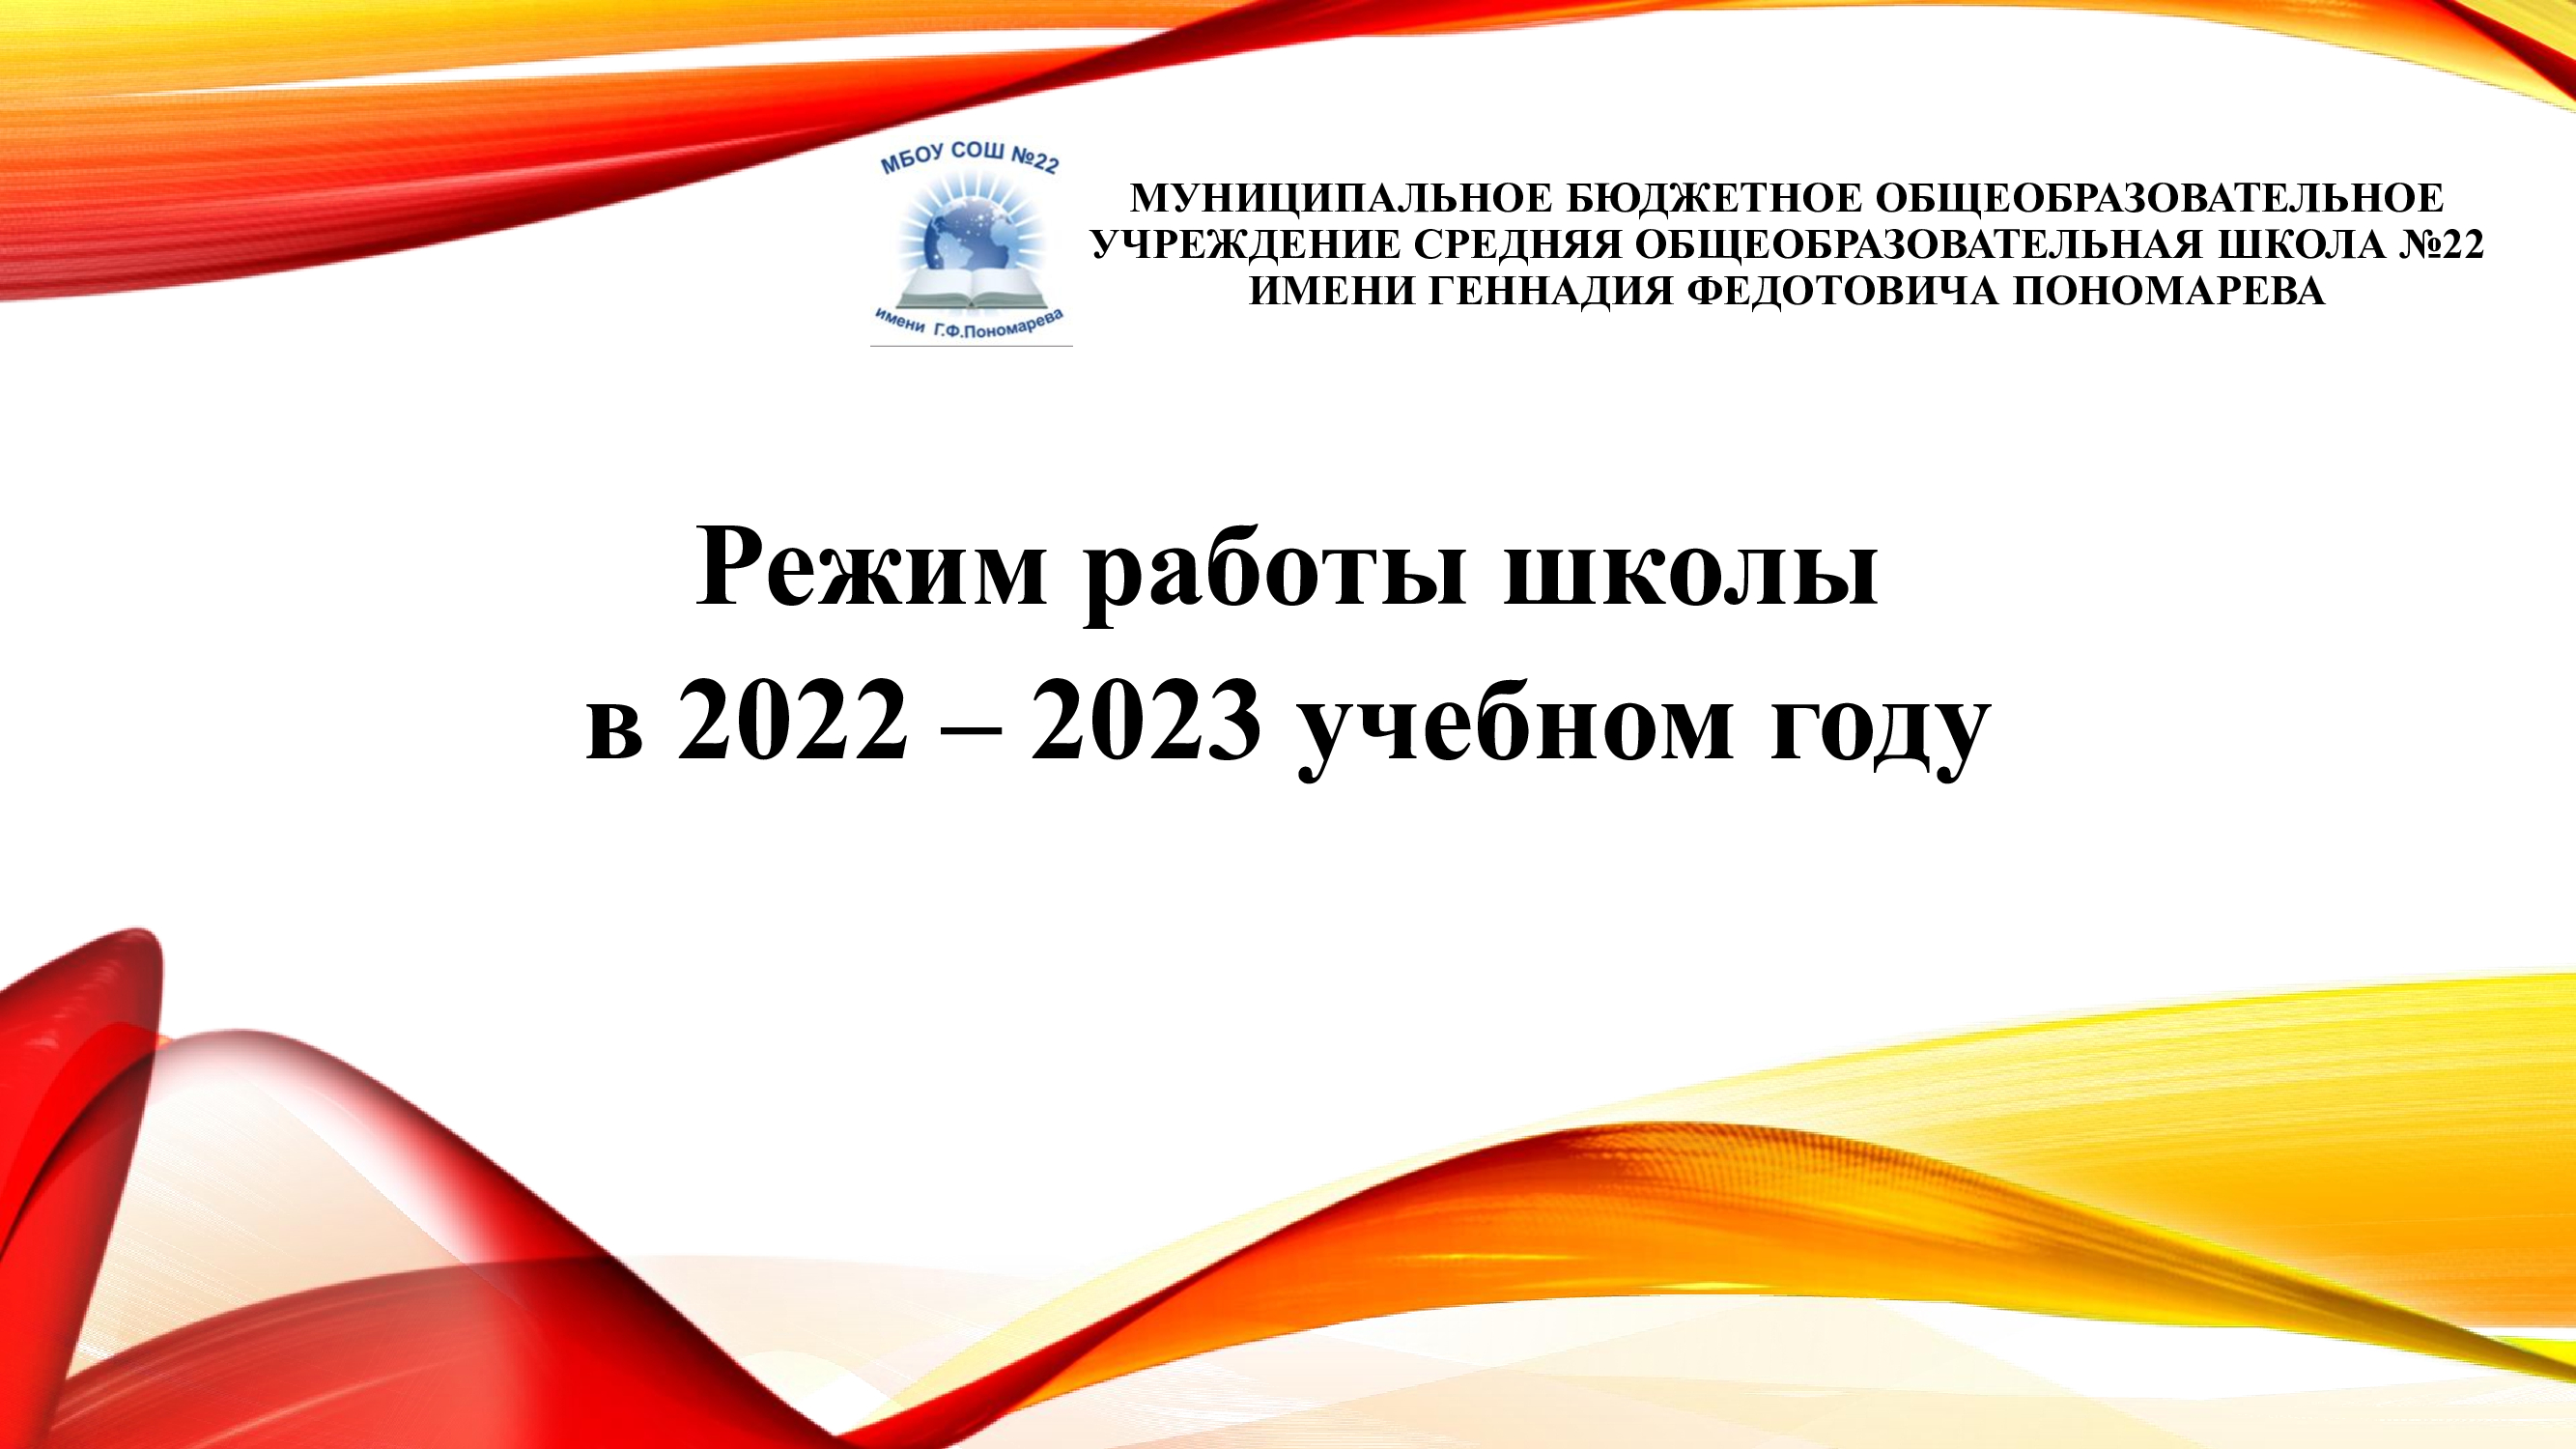 Организация образовательной деятельности в 2022-2023 учебном году.